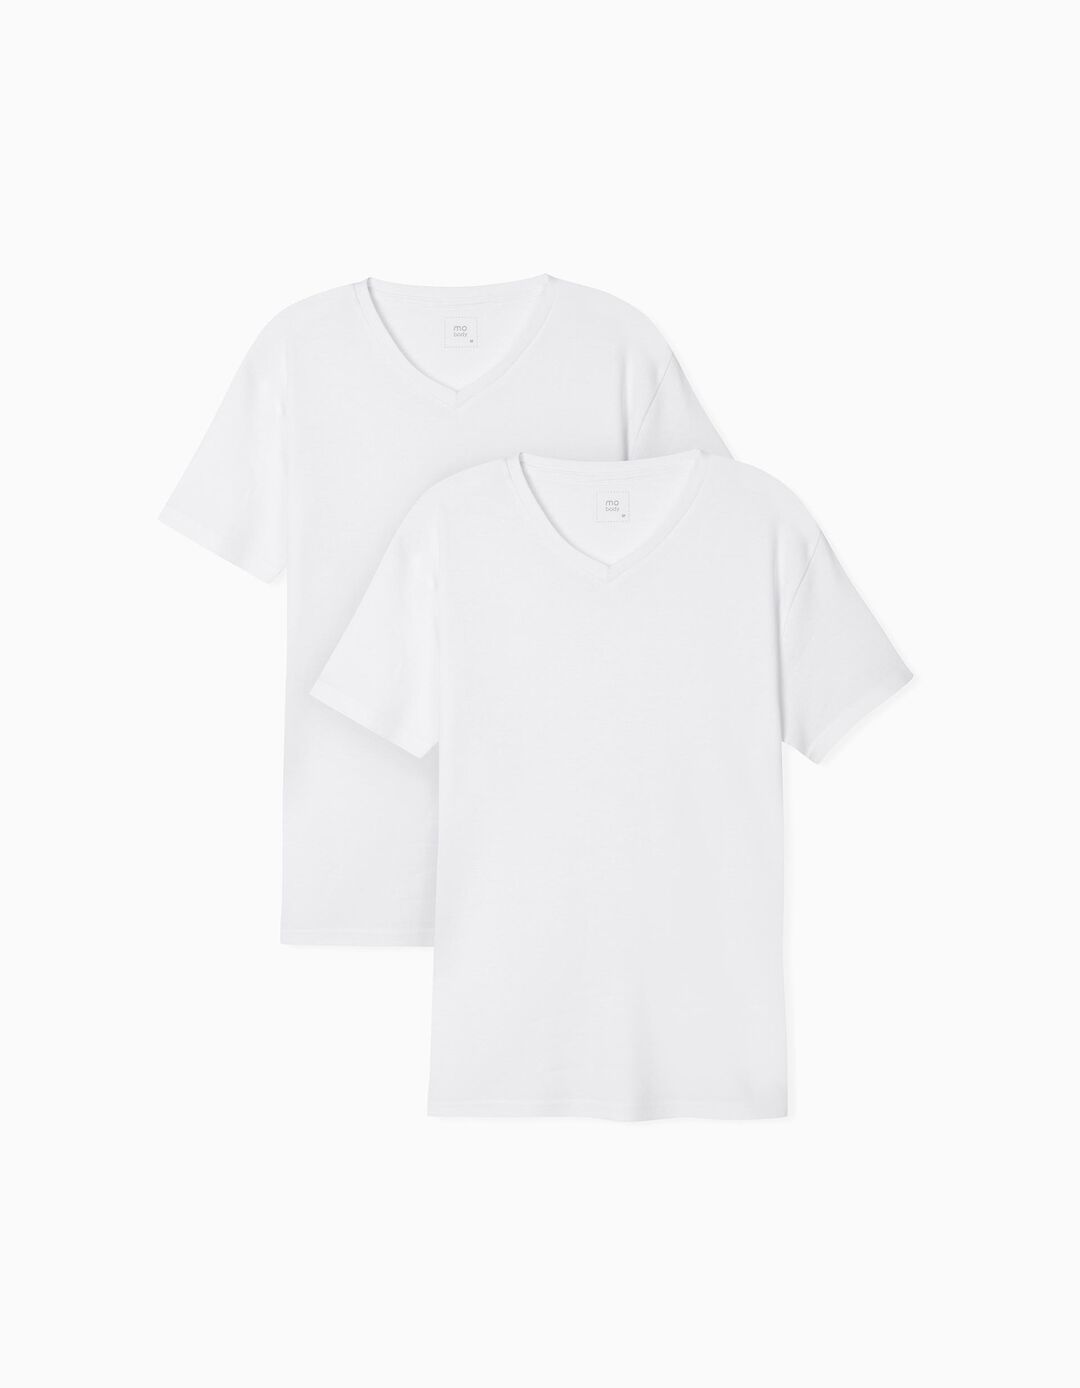 2 T-Shirts Interiores, Homem, Branco